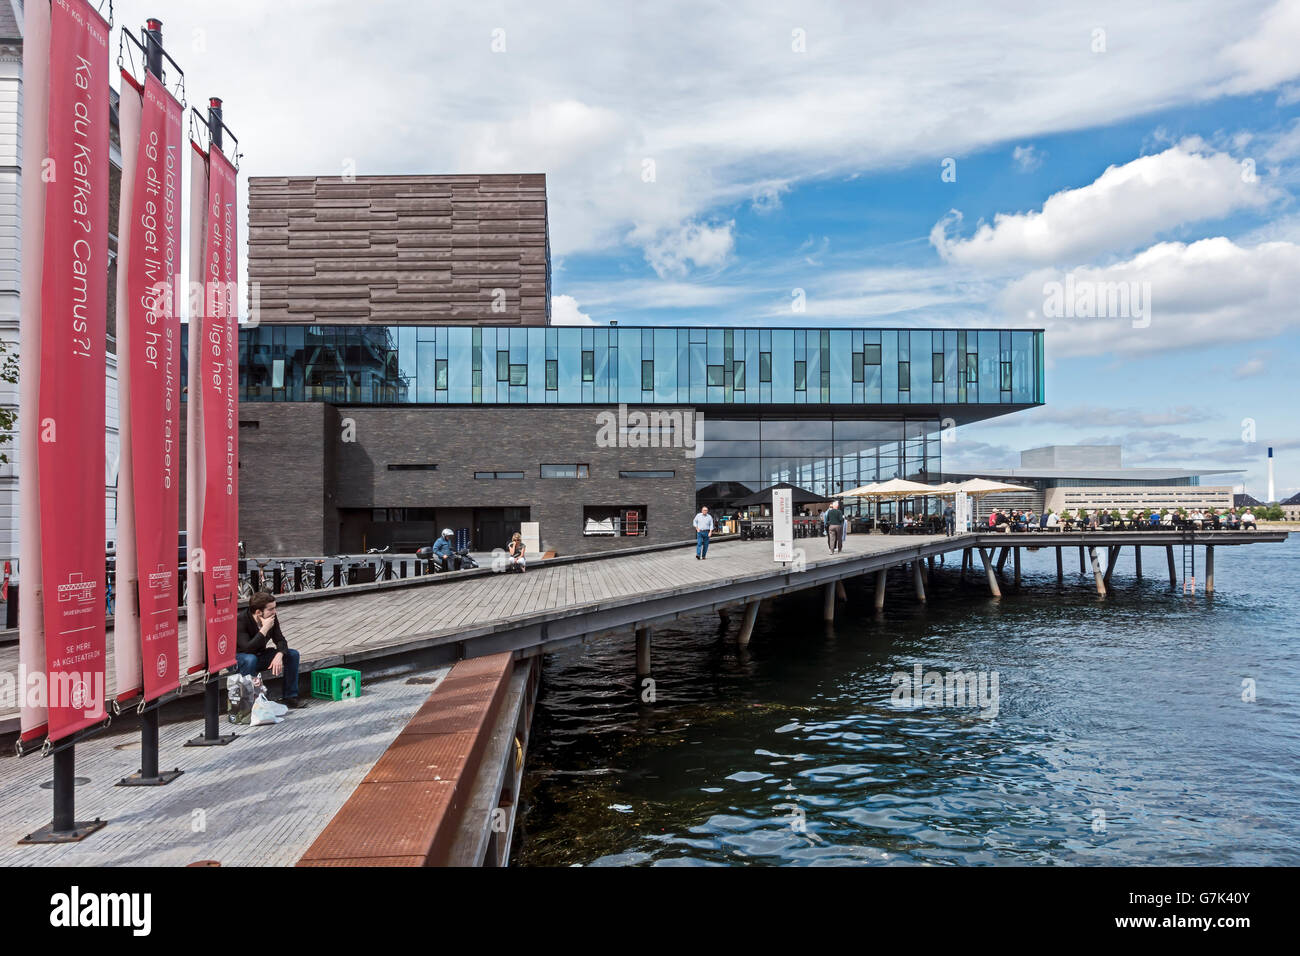 Skuespilhuset (The Royal Playhouse) in Nyhavn Copenhagen Denmark Stock Photo